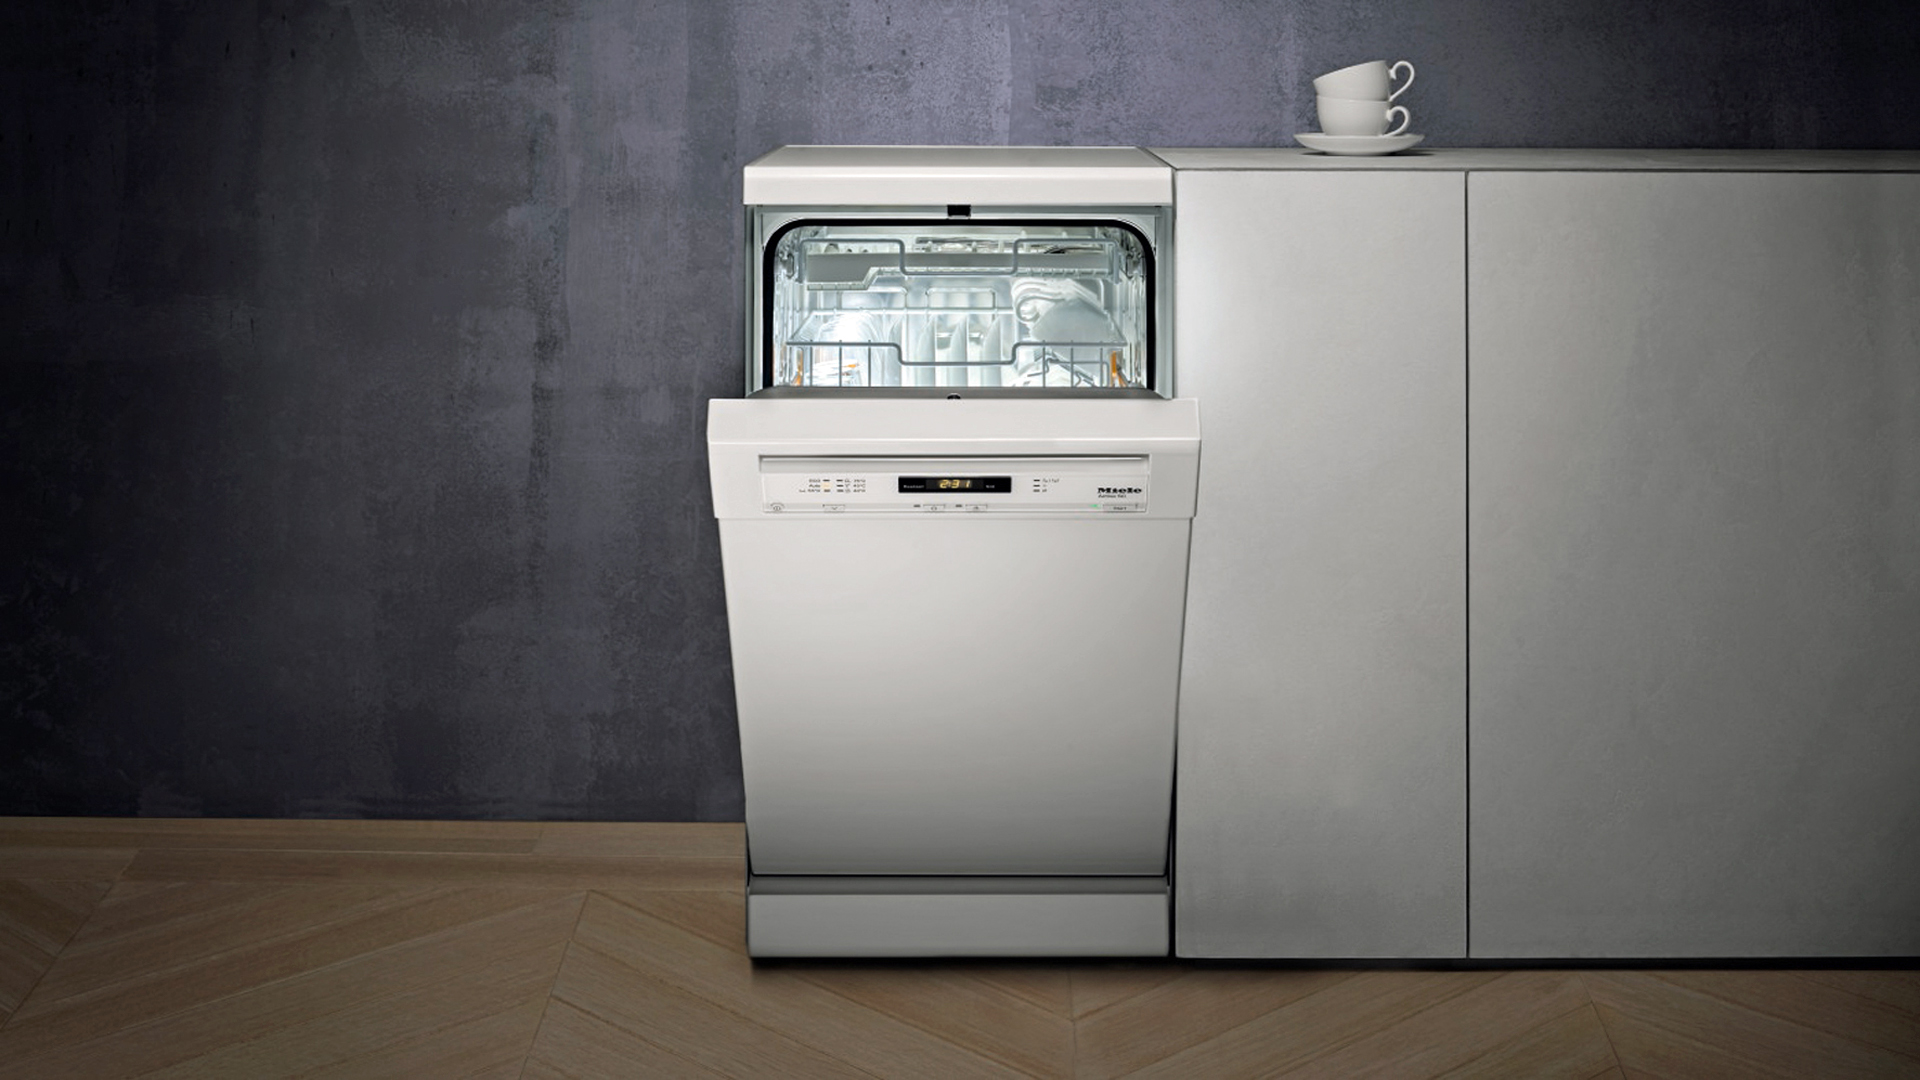 Посудомоечная машина горенье отдельностоящая. Посудомоечная машина Miele 60 см. Посудомоечная машина Miele 45. Машина посудомоечная Miele g4203 SC. Посудомоечная машина Bosch 2020.